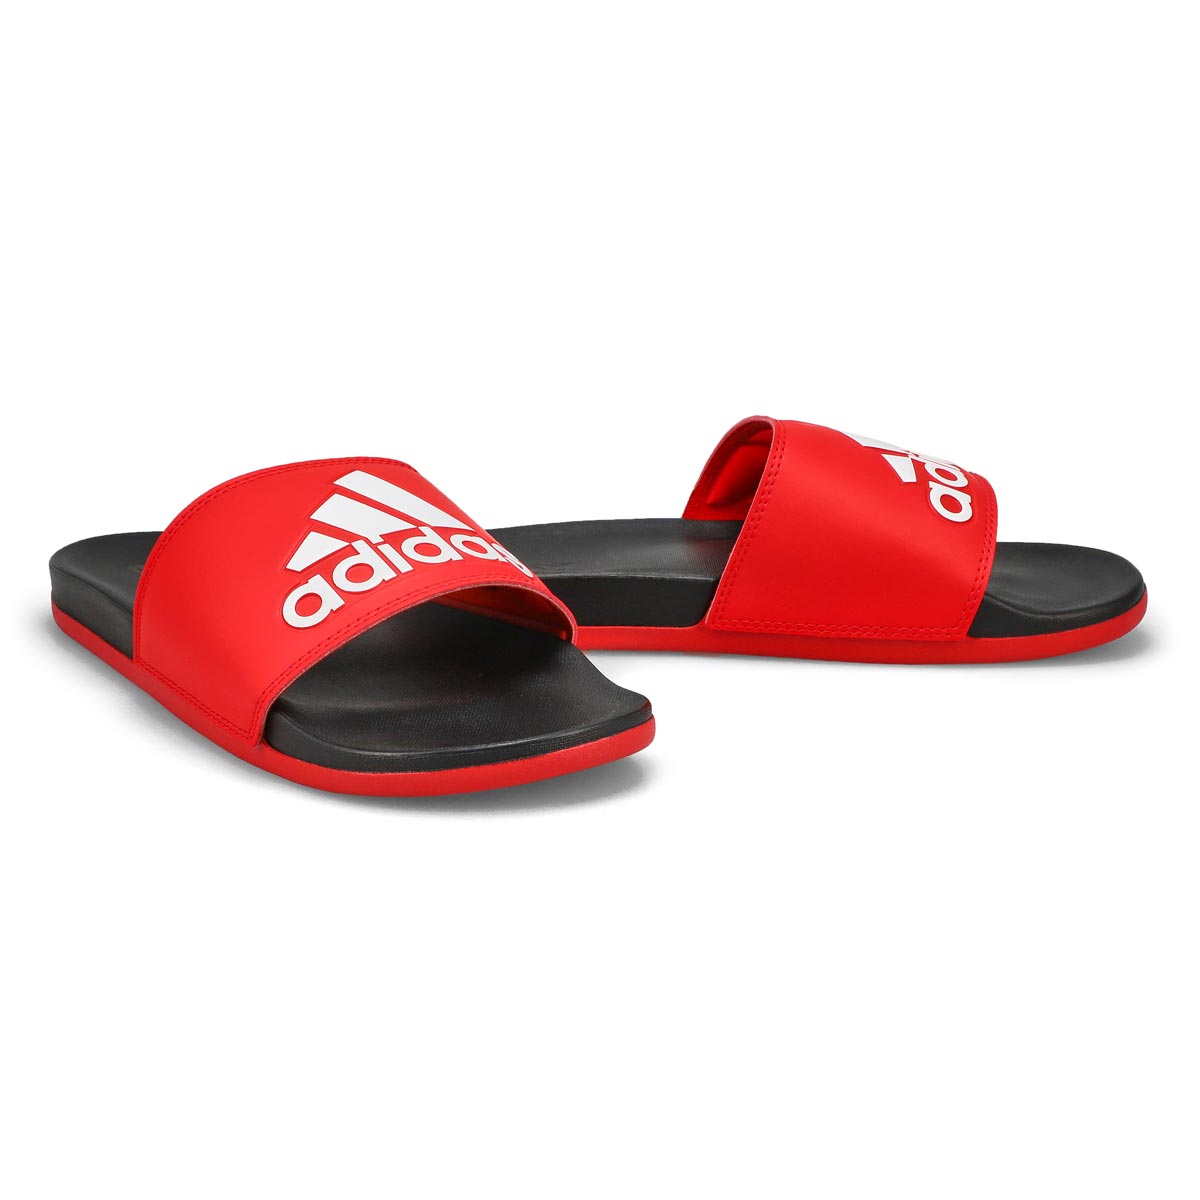 Men's Adilette Comfort Slide Sandal - Red/Black/White